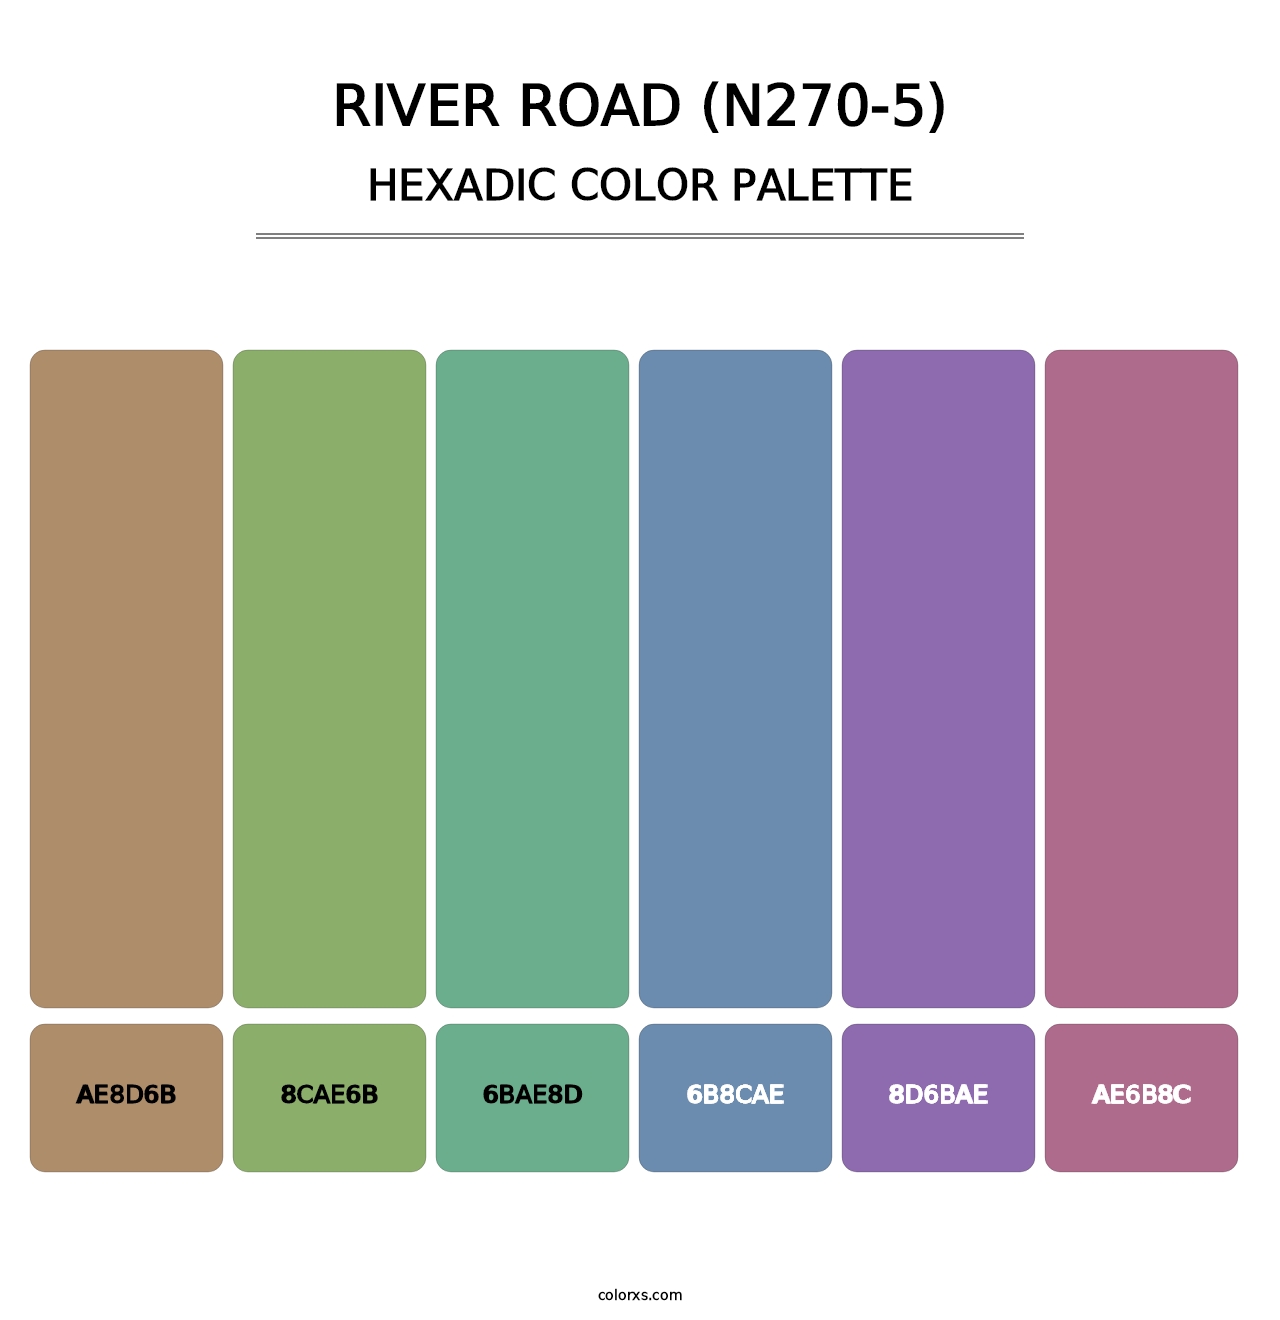 River Road (N270-5) - Hexadic Color Palette